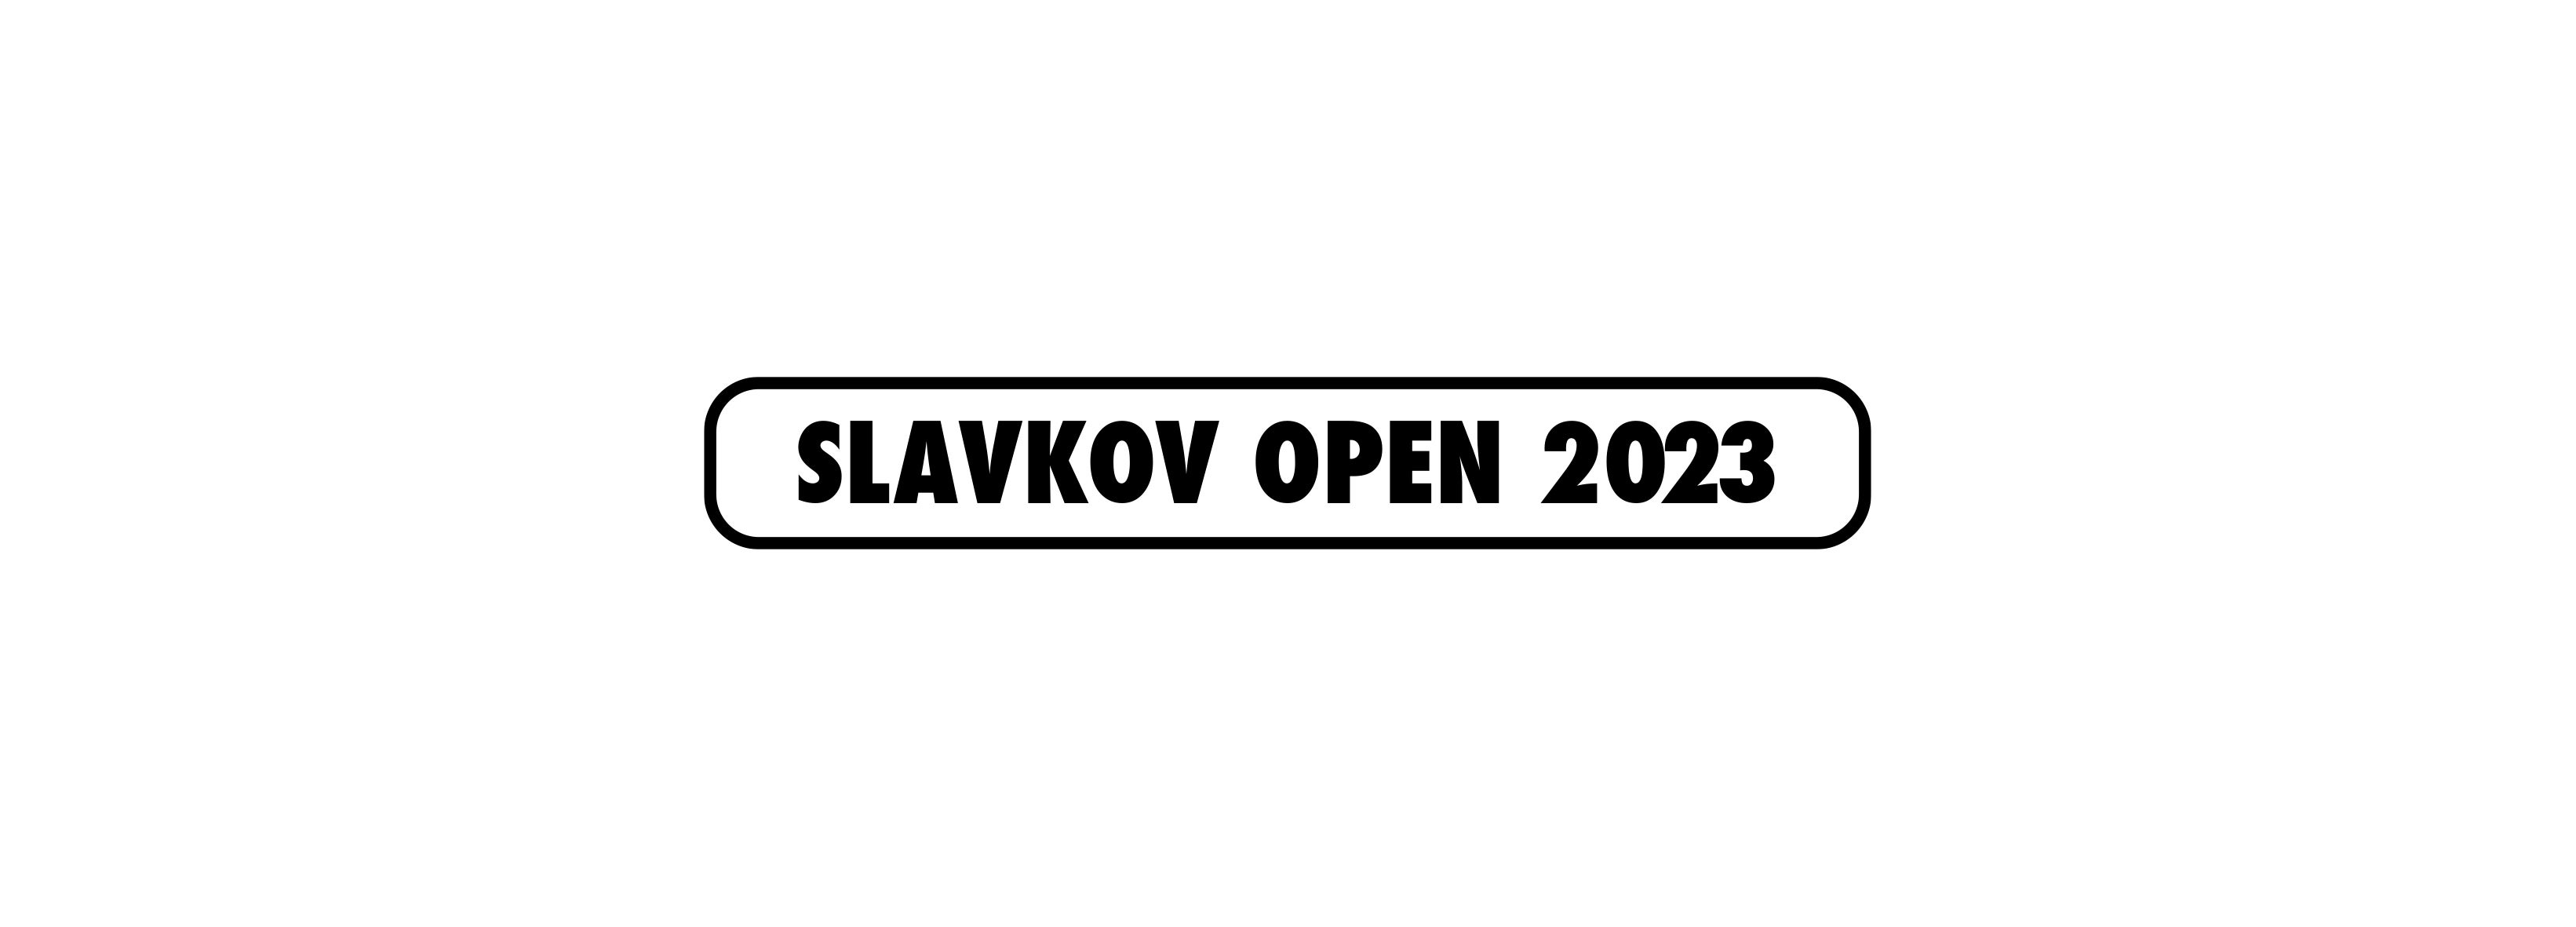 Slavkov Open 2023: Dvoudenní vstupenka (15.+16.7.2023)- Brno -Winning Group Arena Brno Křídlovická 34, Brno 60300